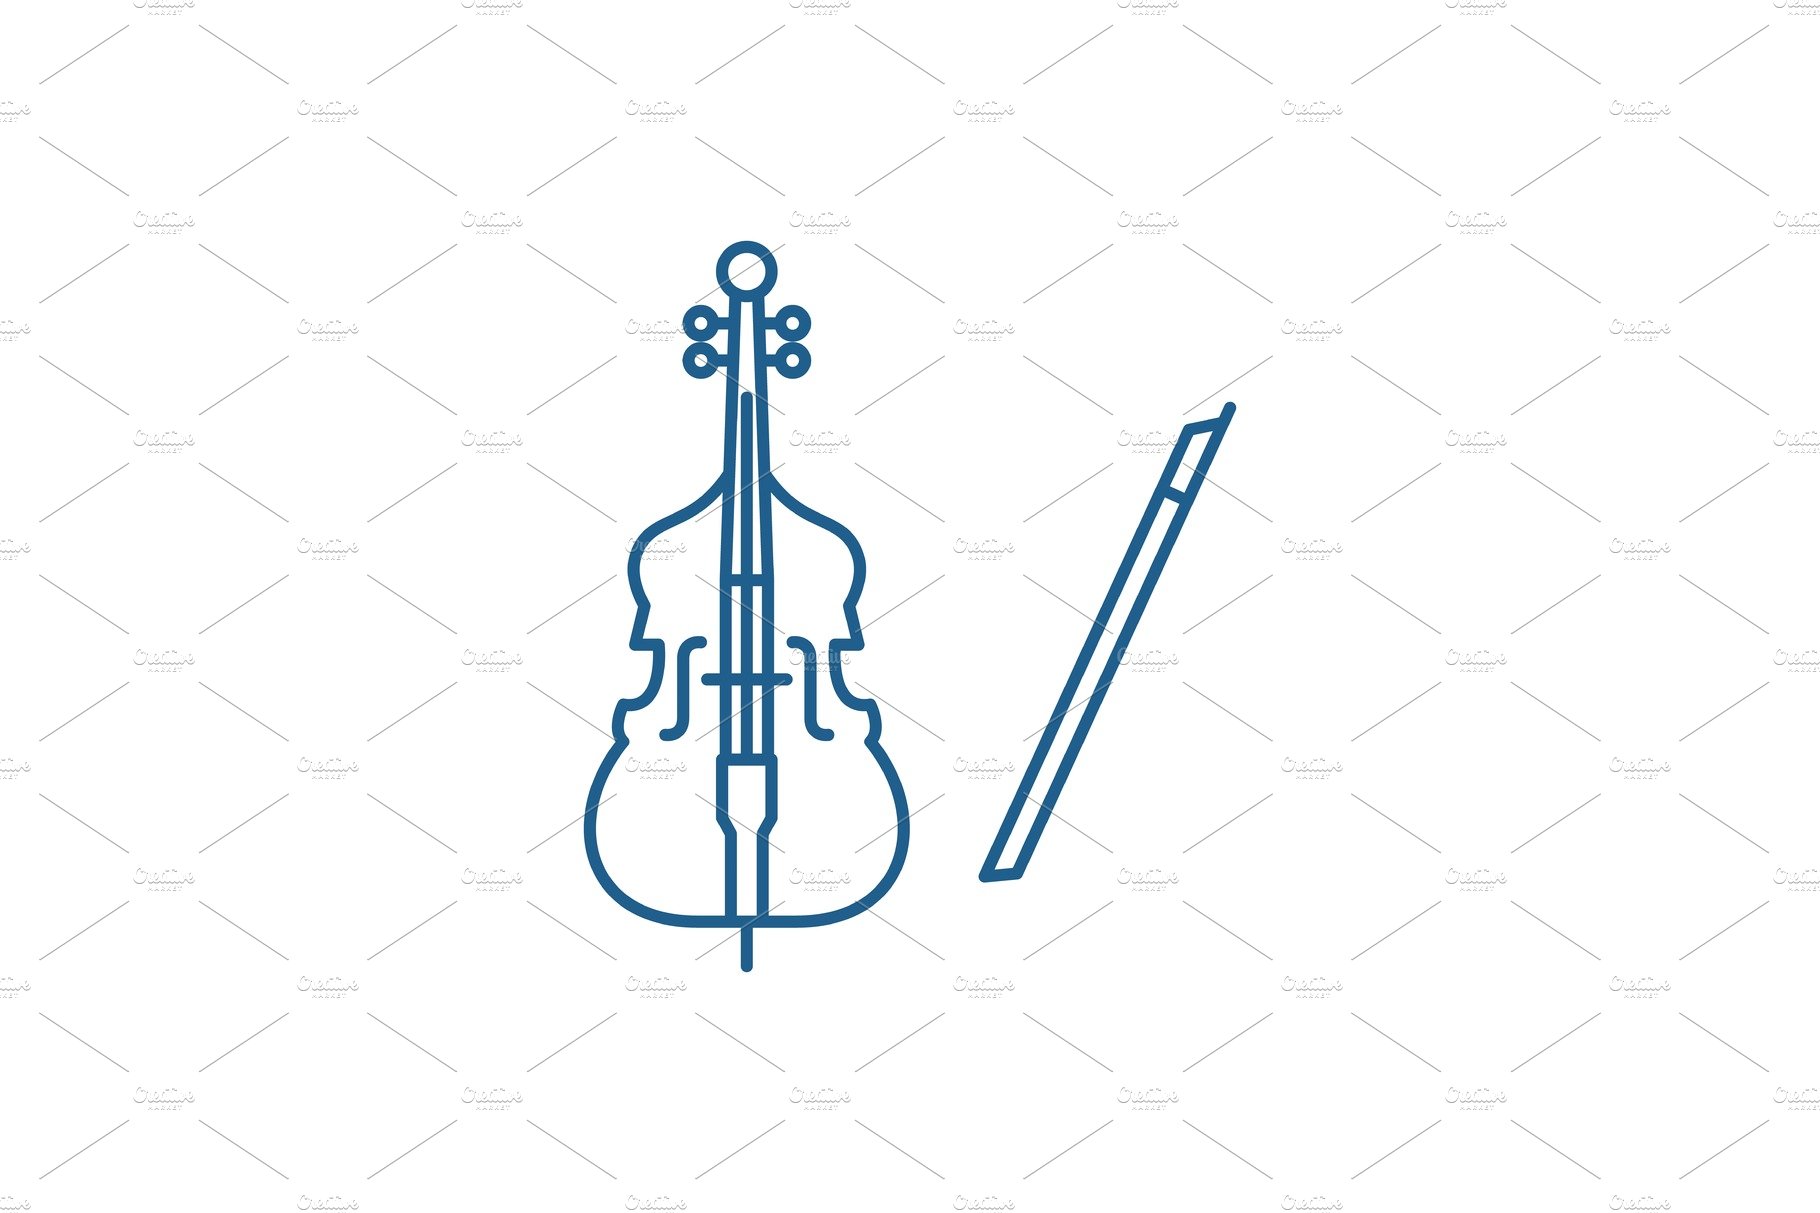 Violin music line icon concept cover image.